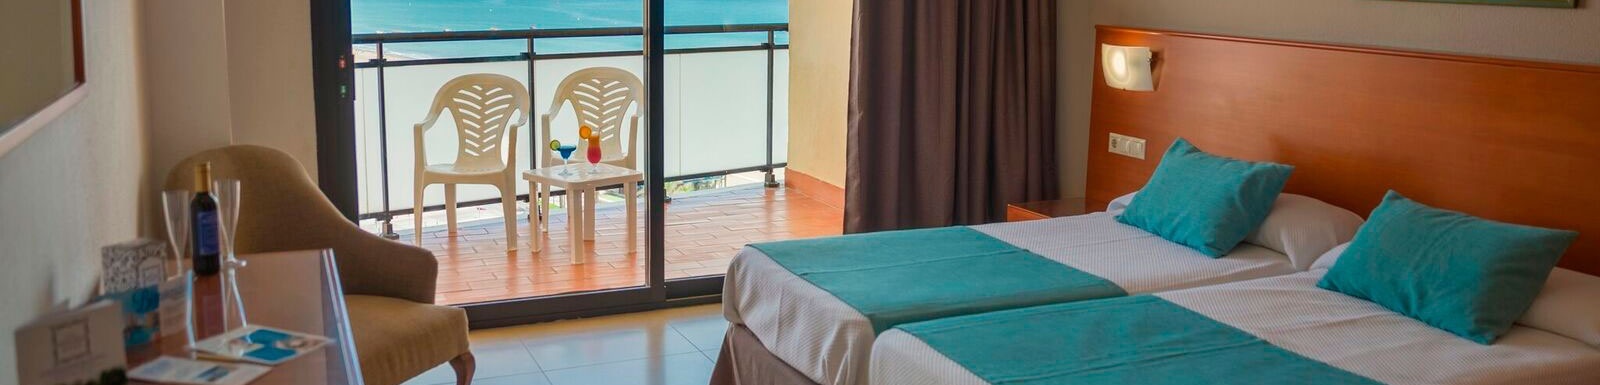 une chambre d' hôtel avec deux lits , une chaise et un balcon avec vue sur l' océan .